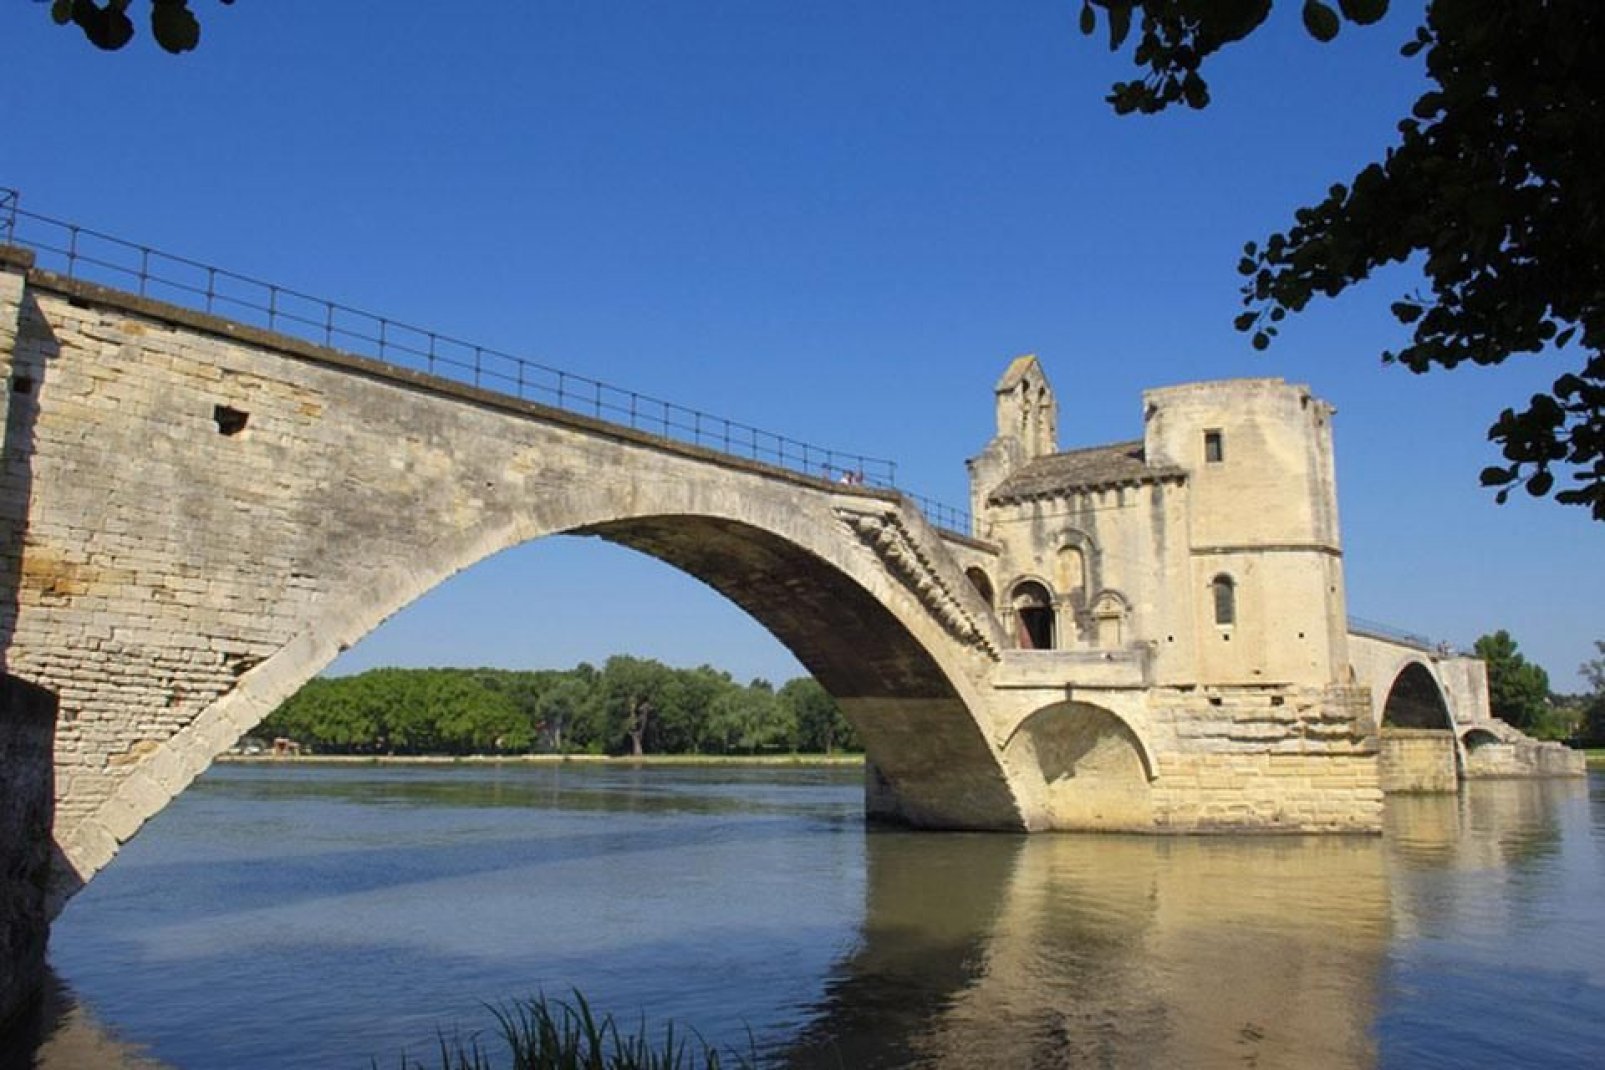 Le célèbre Pont d'Avignon (oui celui de la chanson) s'appelle en réalité Pont Saint-Bénézet et fut achevé en 1185.